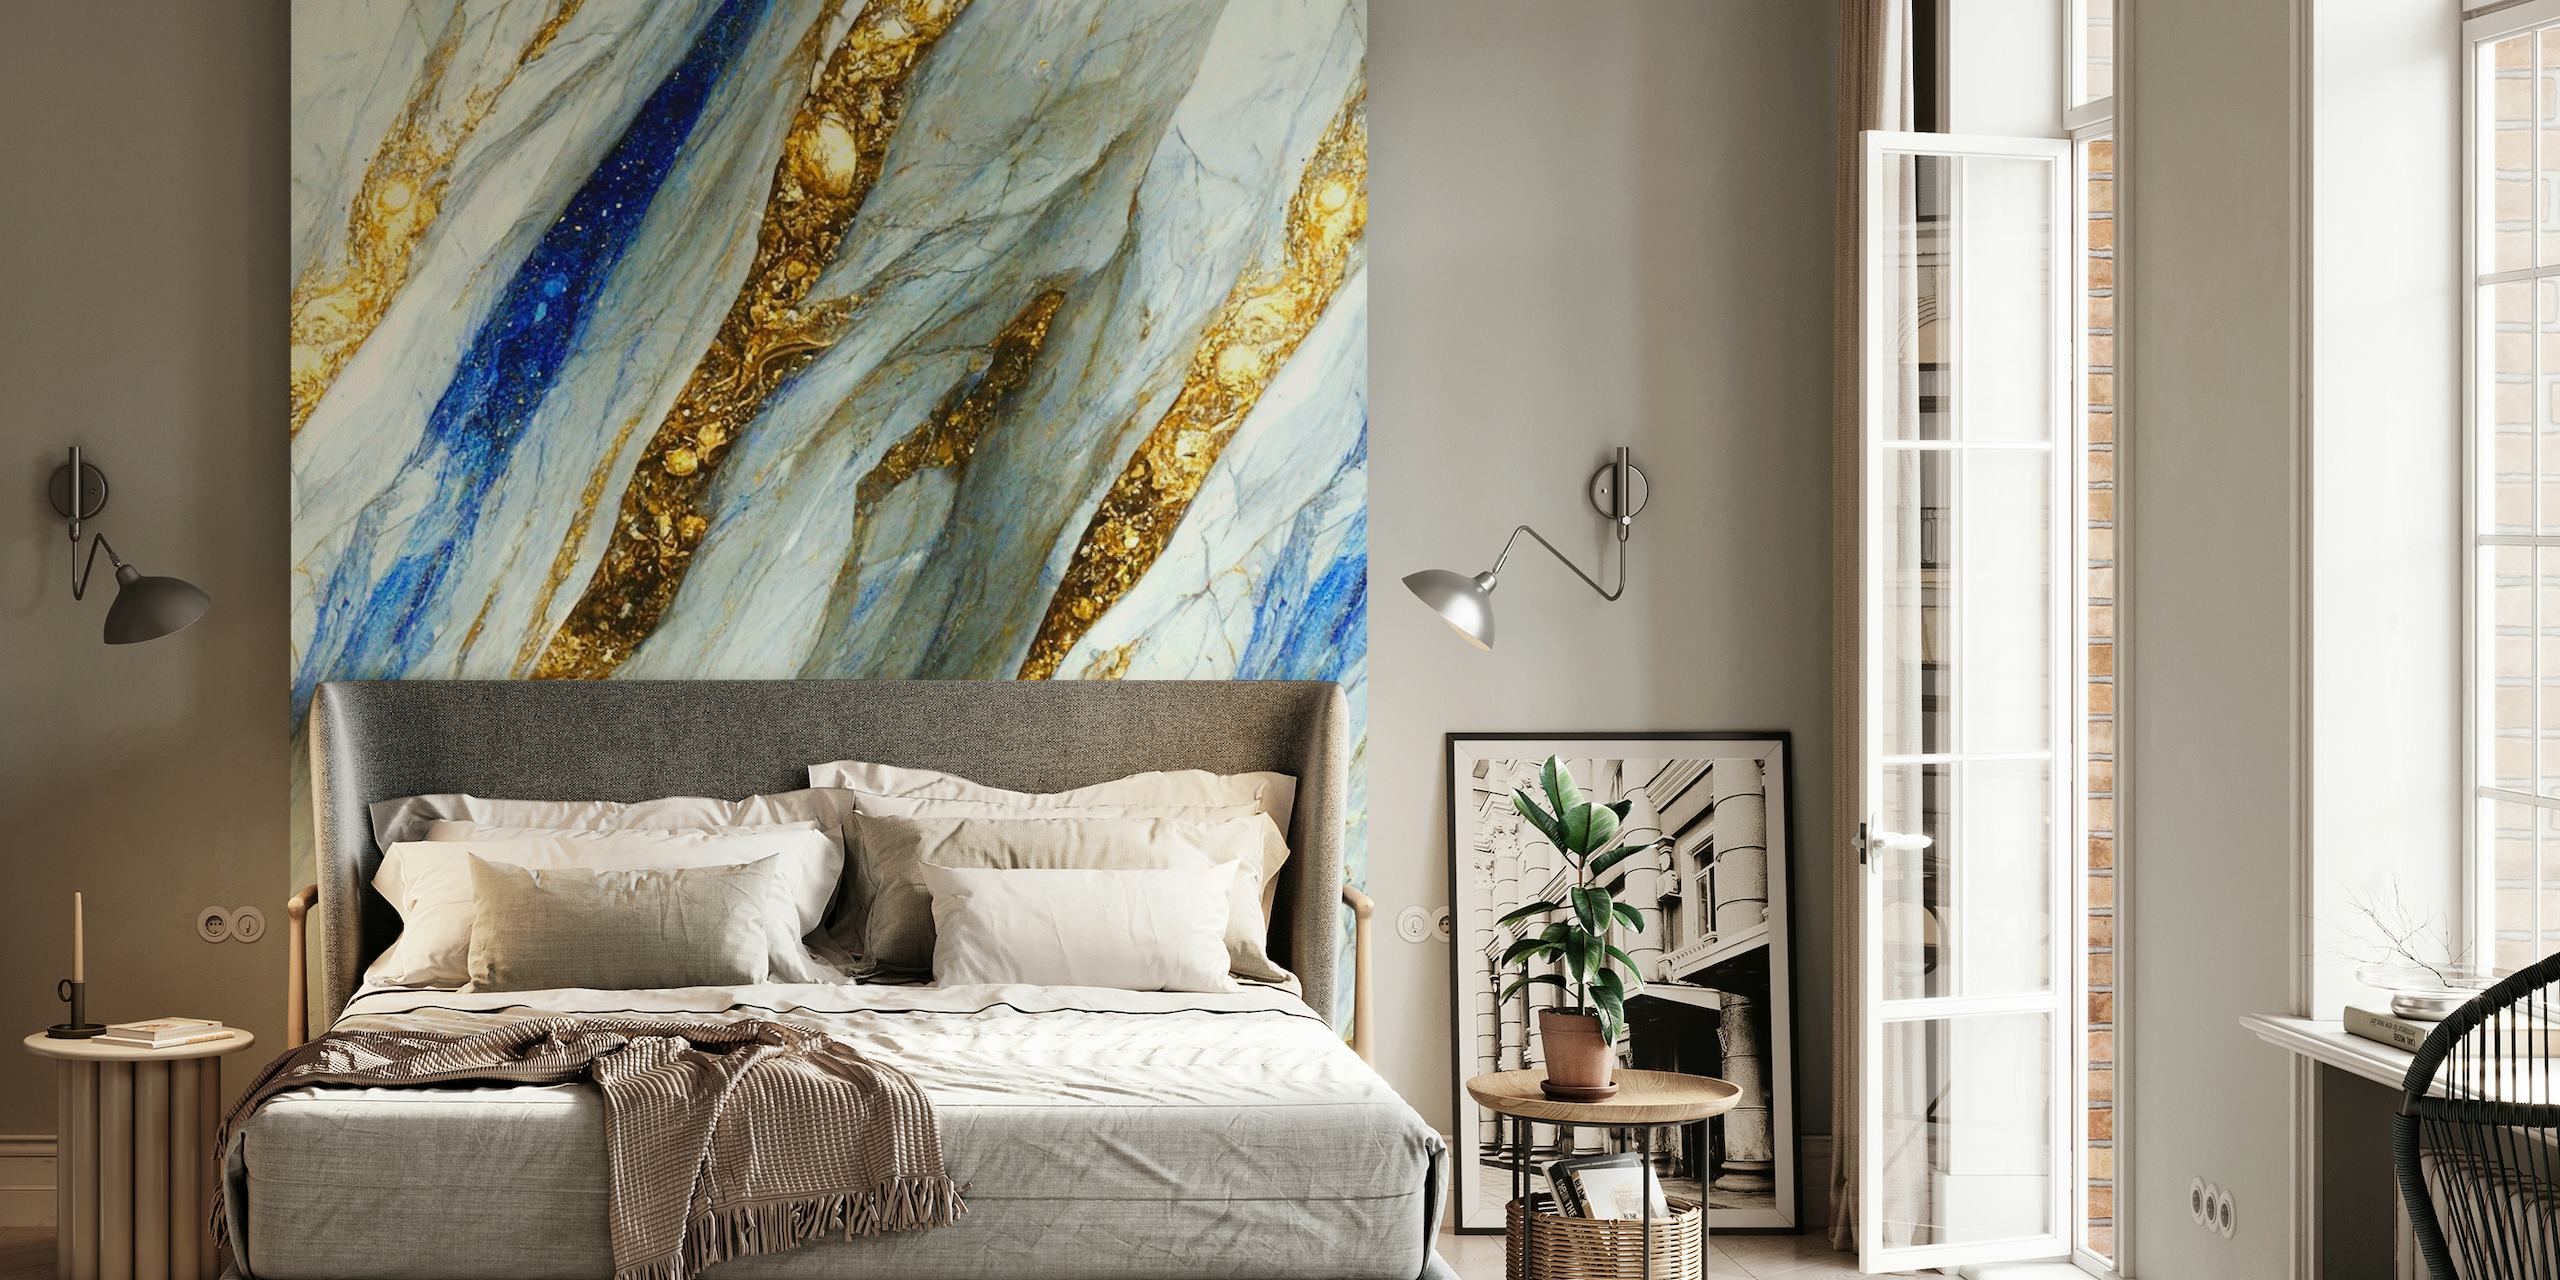 Elegante mural de pared con motivos de mármol dorado, azul y blanco que se asemejan a ríos de oro líquido y piedras preciosas.